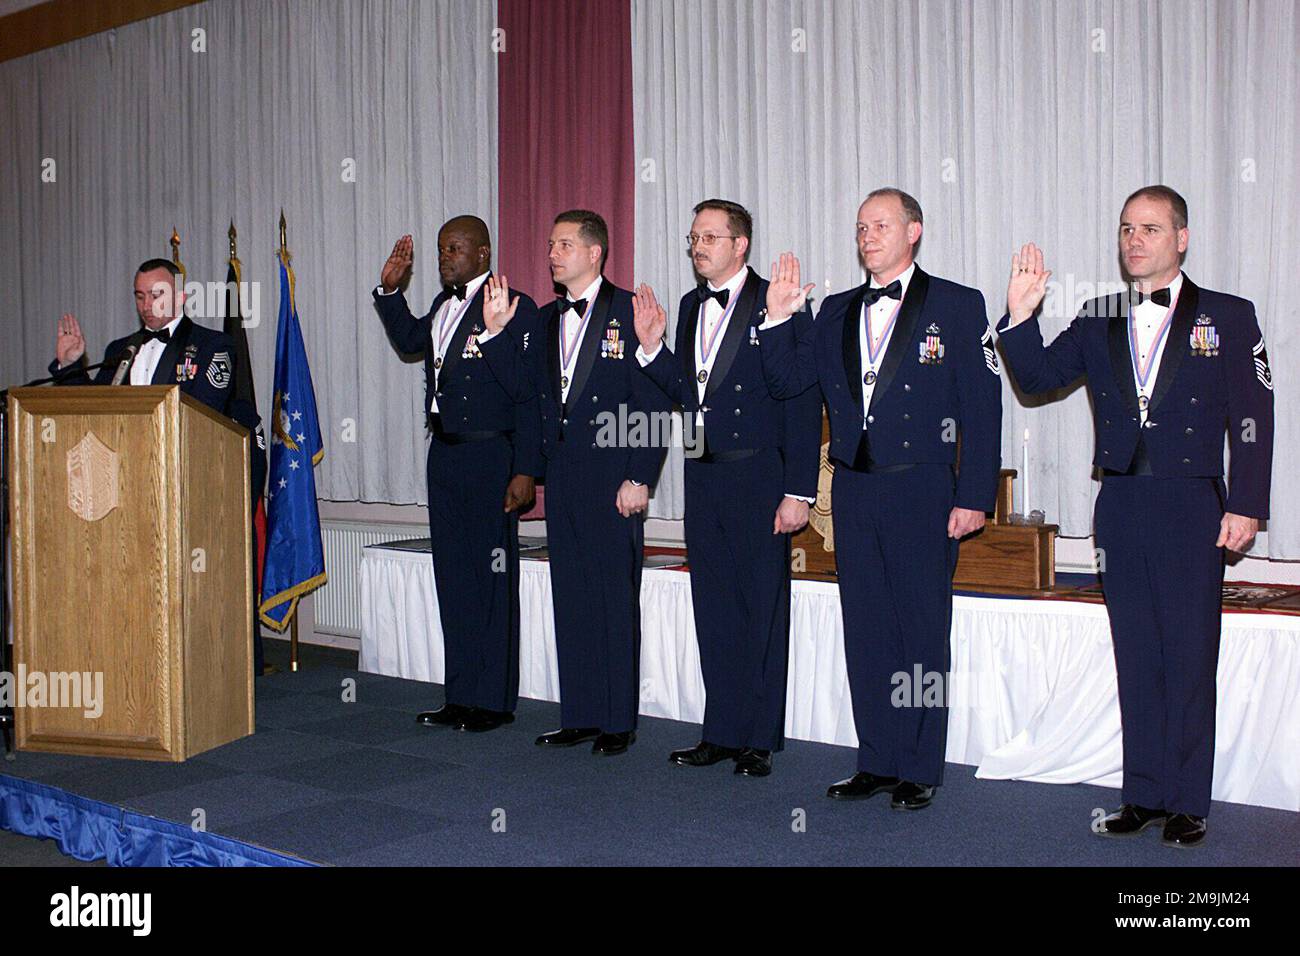 030117-F-7449W-002. [Completo] Texto de la escena: Sargento EN JEFE DE Comando de la Fuerza Aérea de LOS ESTADOS UNIDOS (USAF) Kenneth J. McQuiston (izquierda), Ala de Caza 52nd (FW), Base Aérea de Spangdahlem (AB), Alemania, recita el Credo del JEFE a cinco SARGENTO en JEFE (CMSGT) DE la USAF seleccionados durante la ceremonia de inducción del SARGENTO en JEFE. Los nuevos CMSGTs son de izquierda a derecha: CMSGT(S) Mike Dortch, NATO AWACS, E-3A Component, Training Wing, Geilenkirchen AB, Alemania, CMSGT(S) Todd W. Barnes, 52nd Escuadrón de Ingenieros Civiles (CES), Spangdahlem AB, Alemania, CMSGT(S) Roger A. Schwenneker, 52nd Mantenimiento de aeronaves Foto de stock